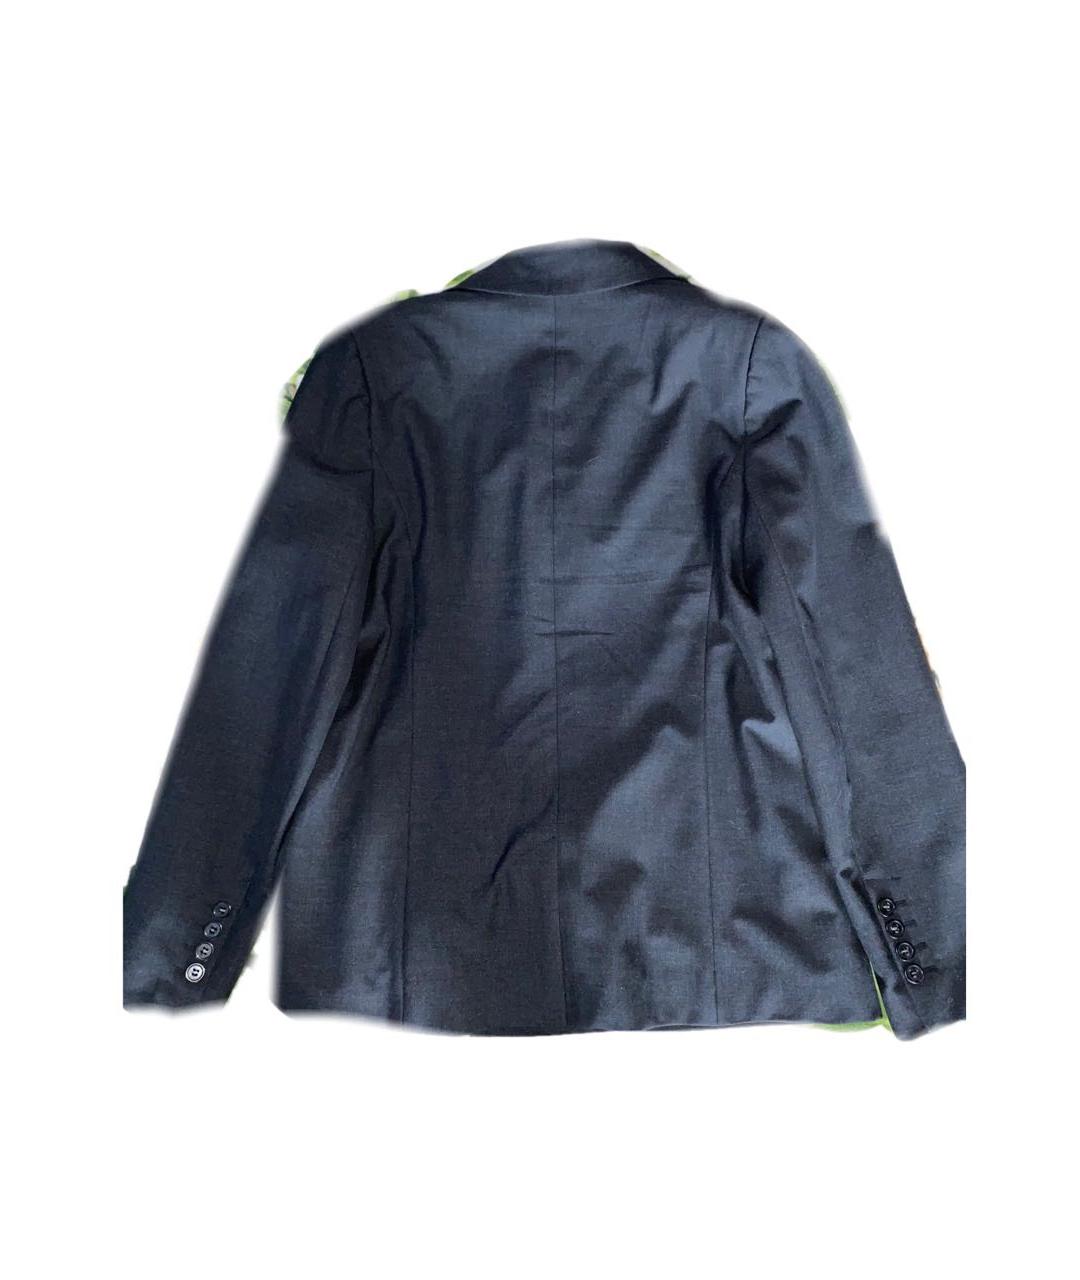 12 STOREEZ Черный полиэстеровый жакет/пиджак, фото 2